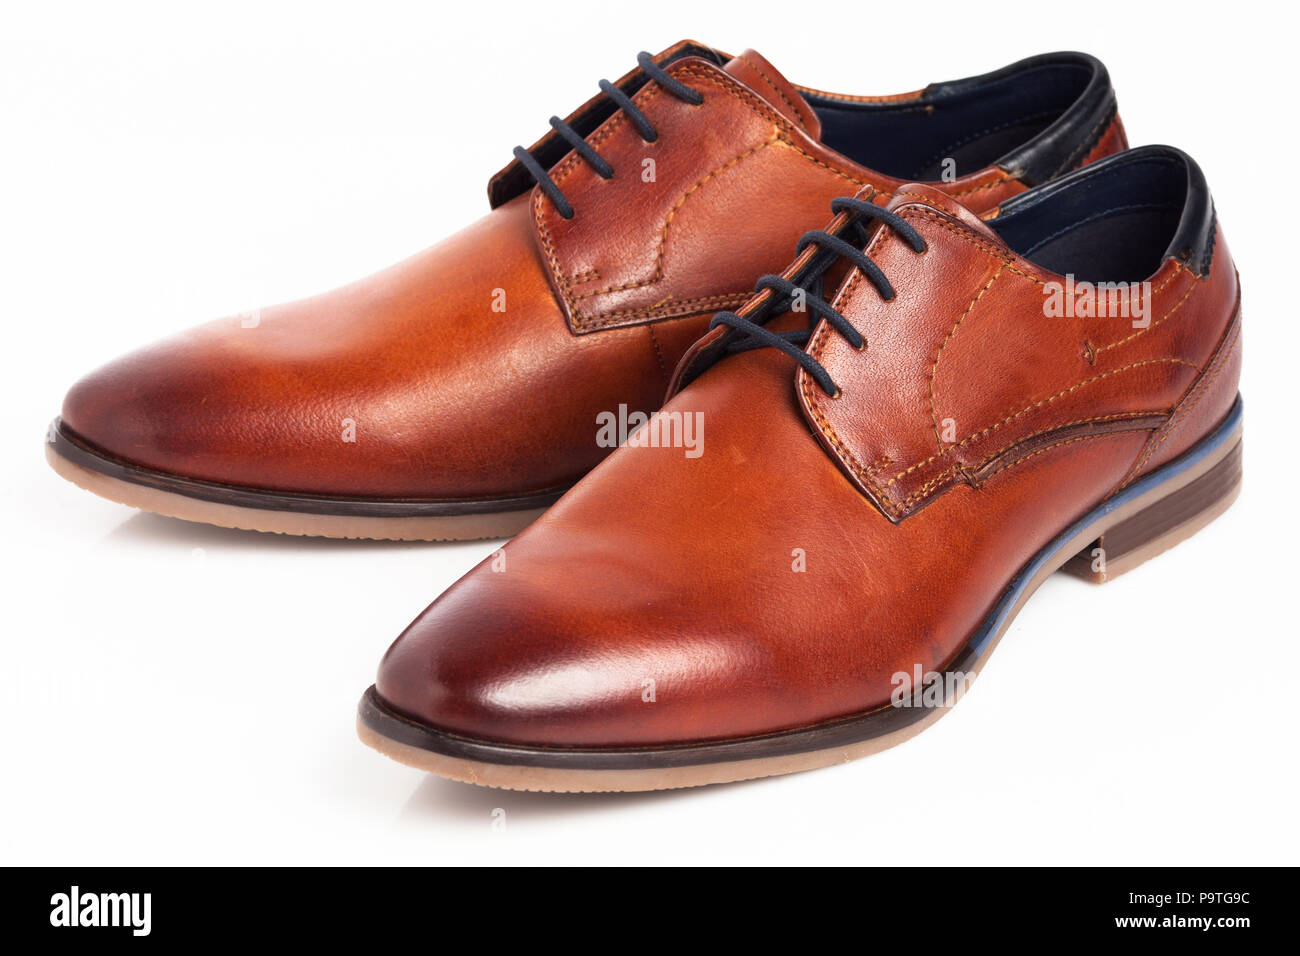 Braune Oxford Schuhe Stockfotos Und Bilder Kaufen Alamy